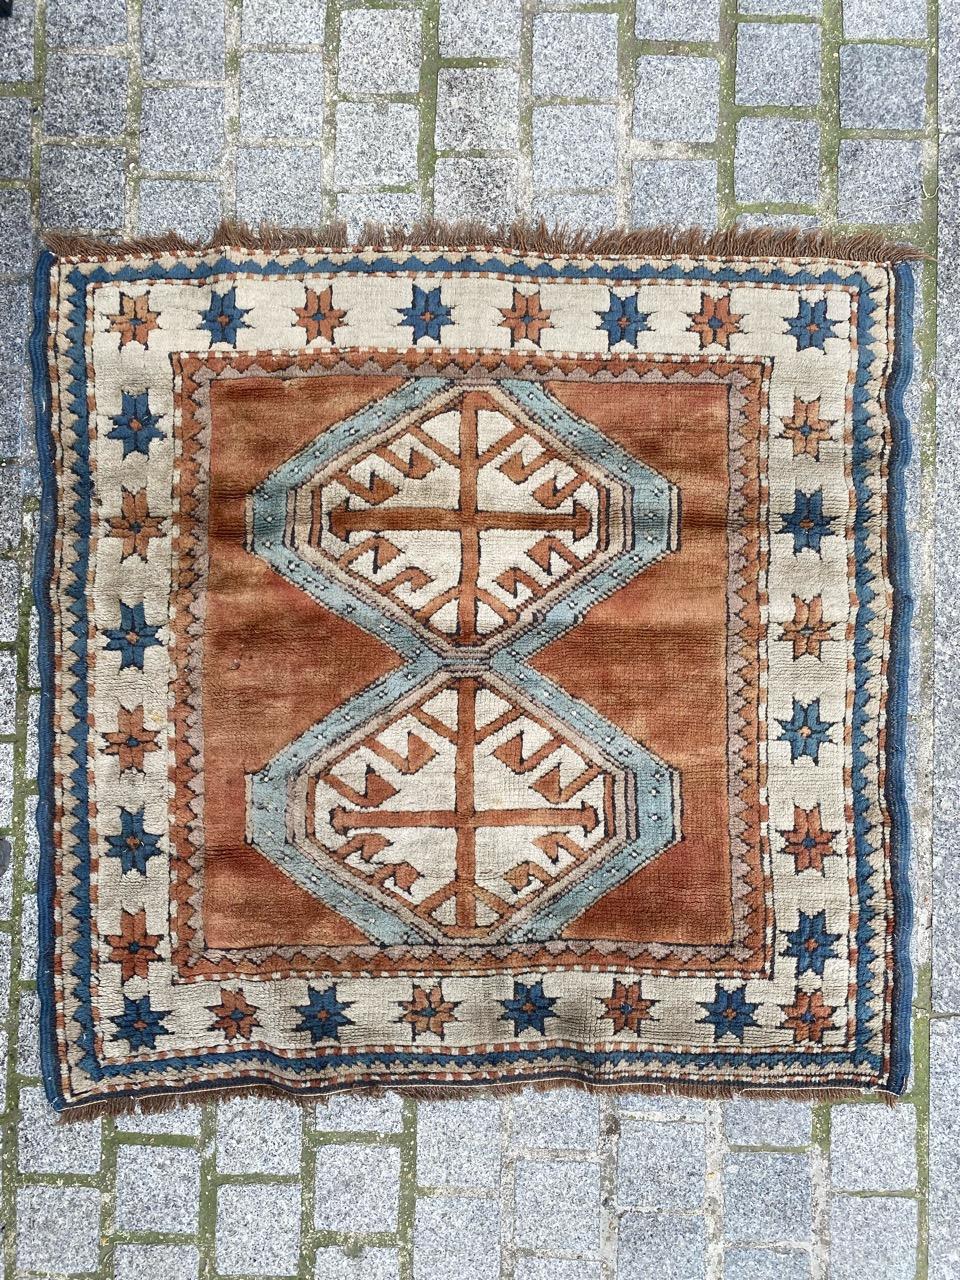 Schöner türkischer quadratischer Teppich aus der Mitte des Jahrhunderts mit schönem geometrischem Muster und schönen Farben, komplett handgeknüpft mit Wollsamt auf Wollunterlage.

✨✨✨
